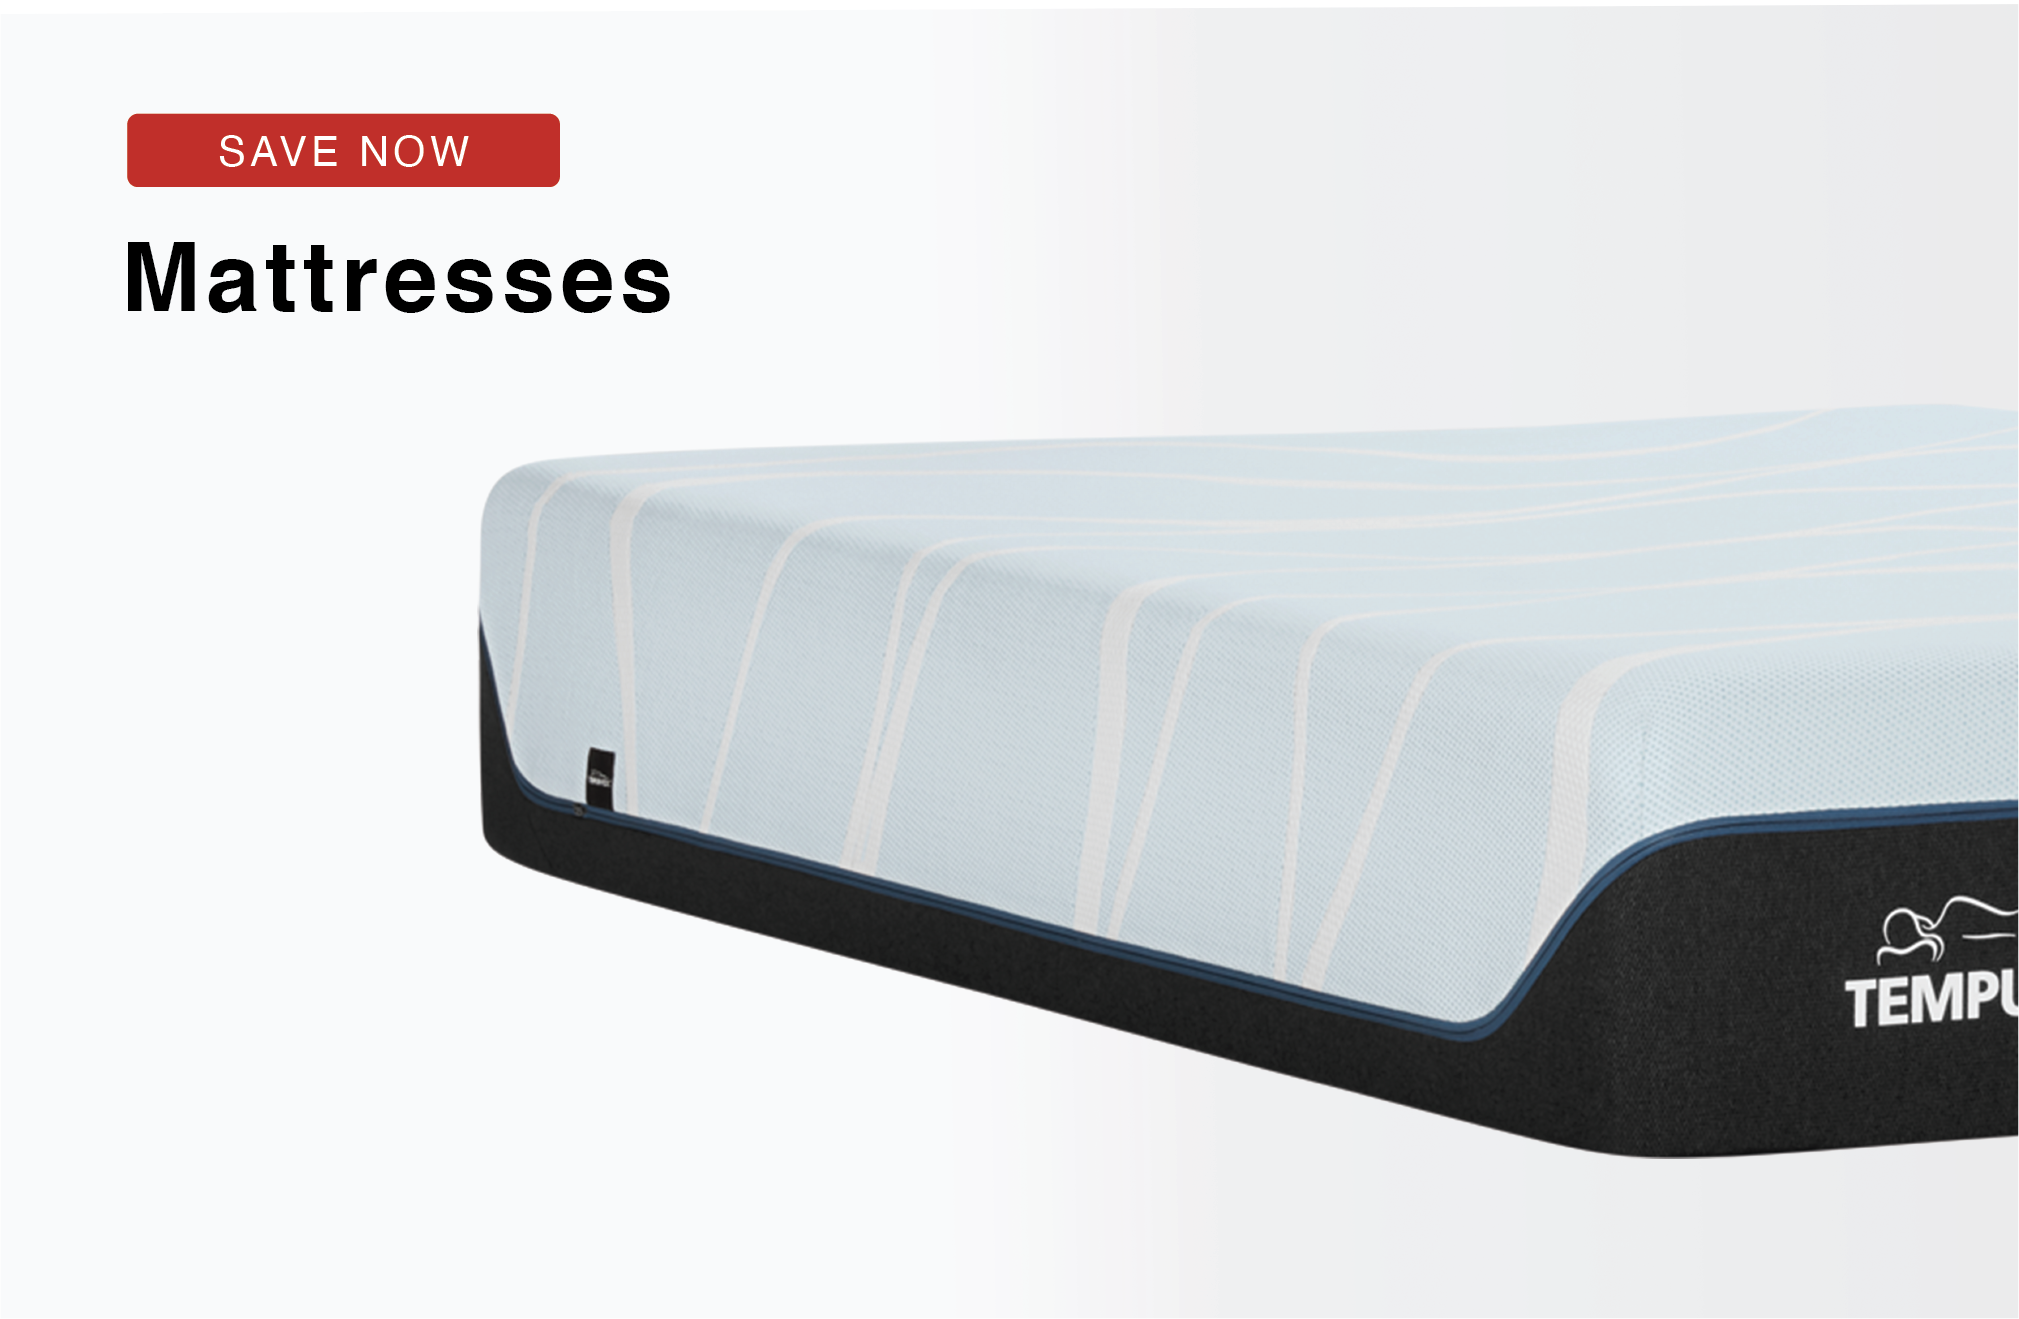 Christian's Mattress Xpress | Sleep Solutions for Sleep Needs